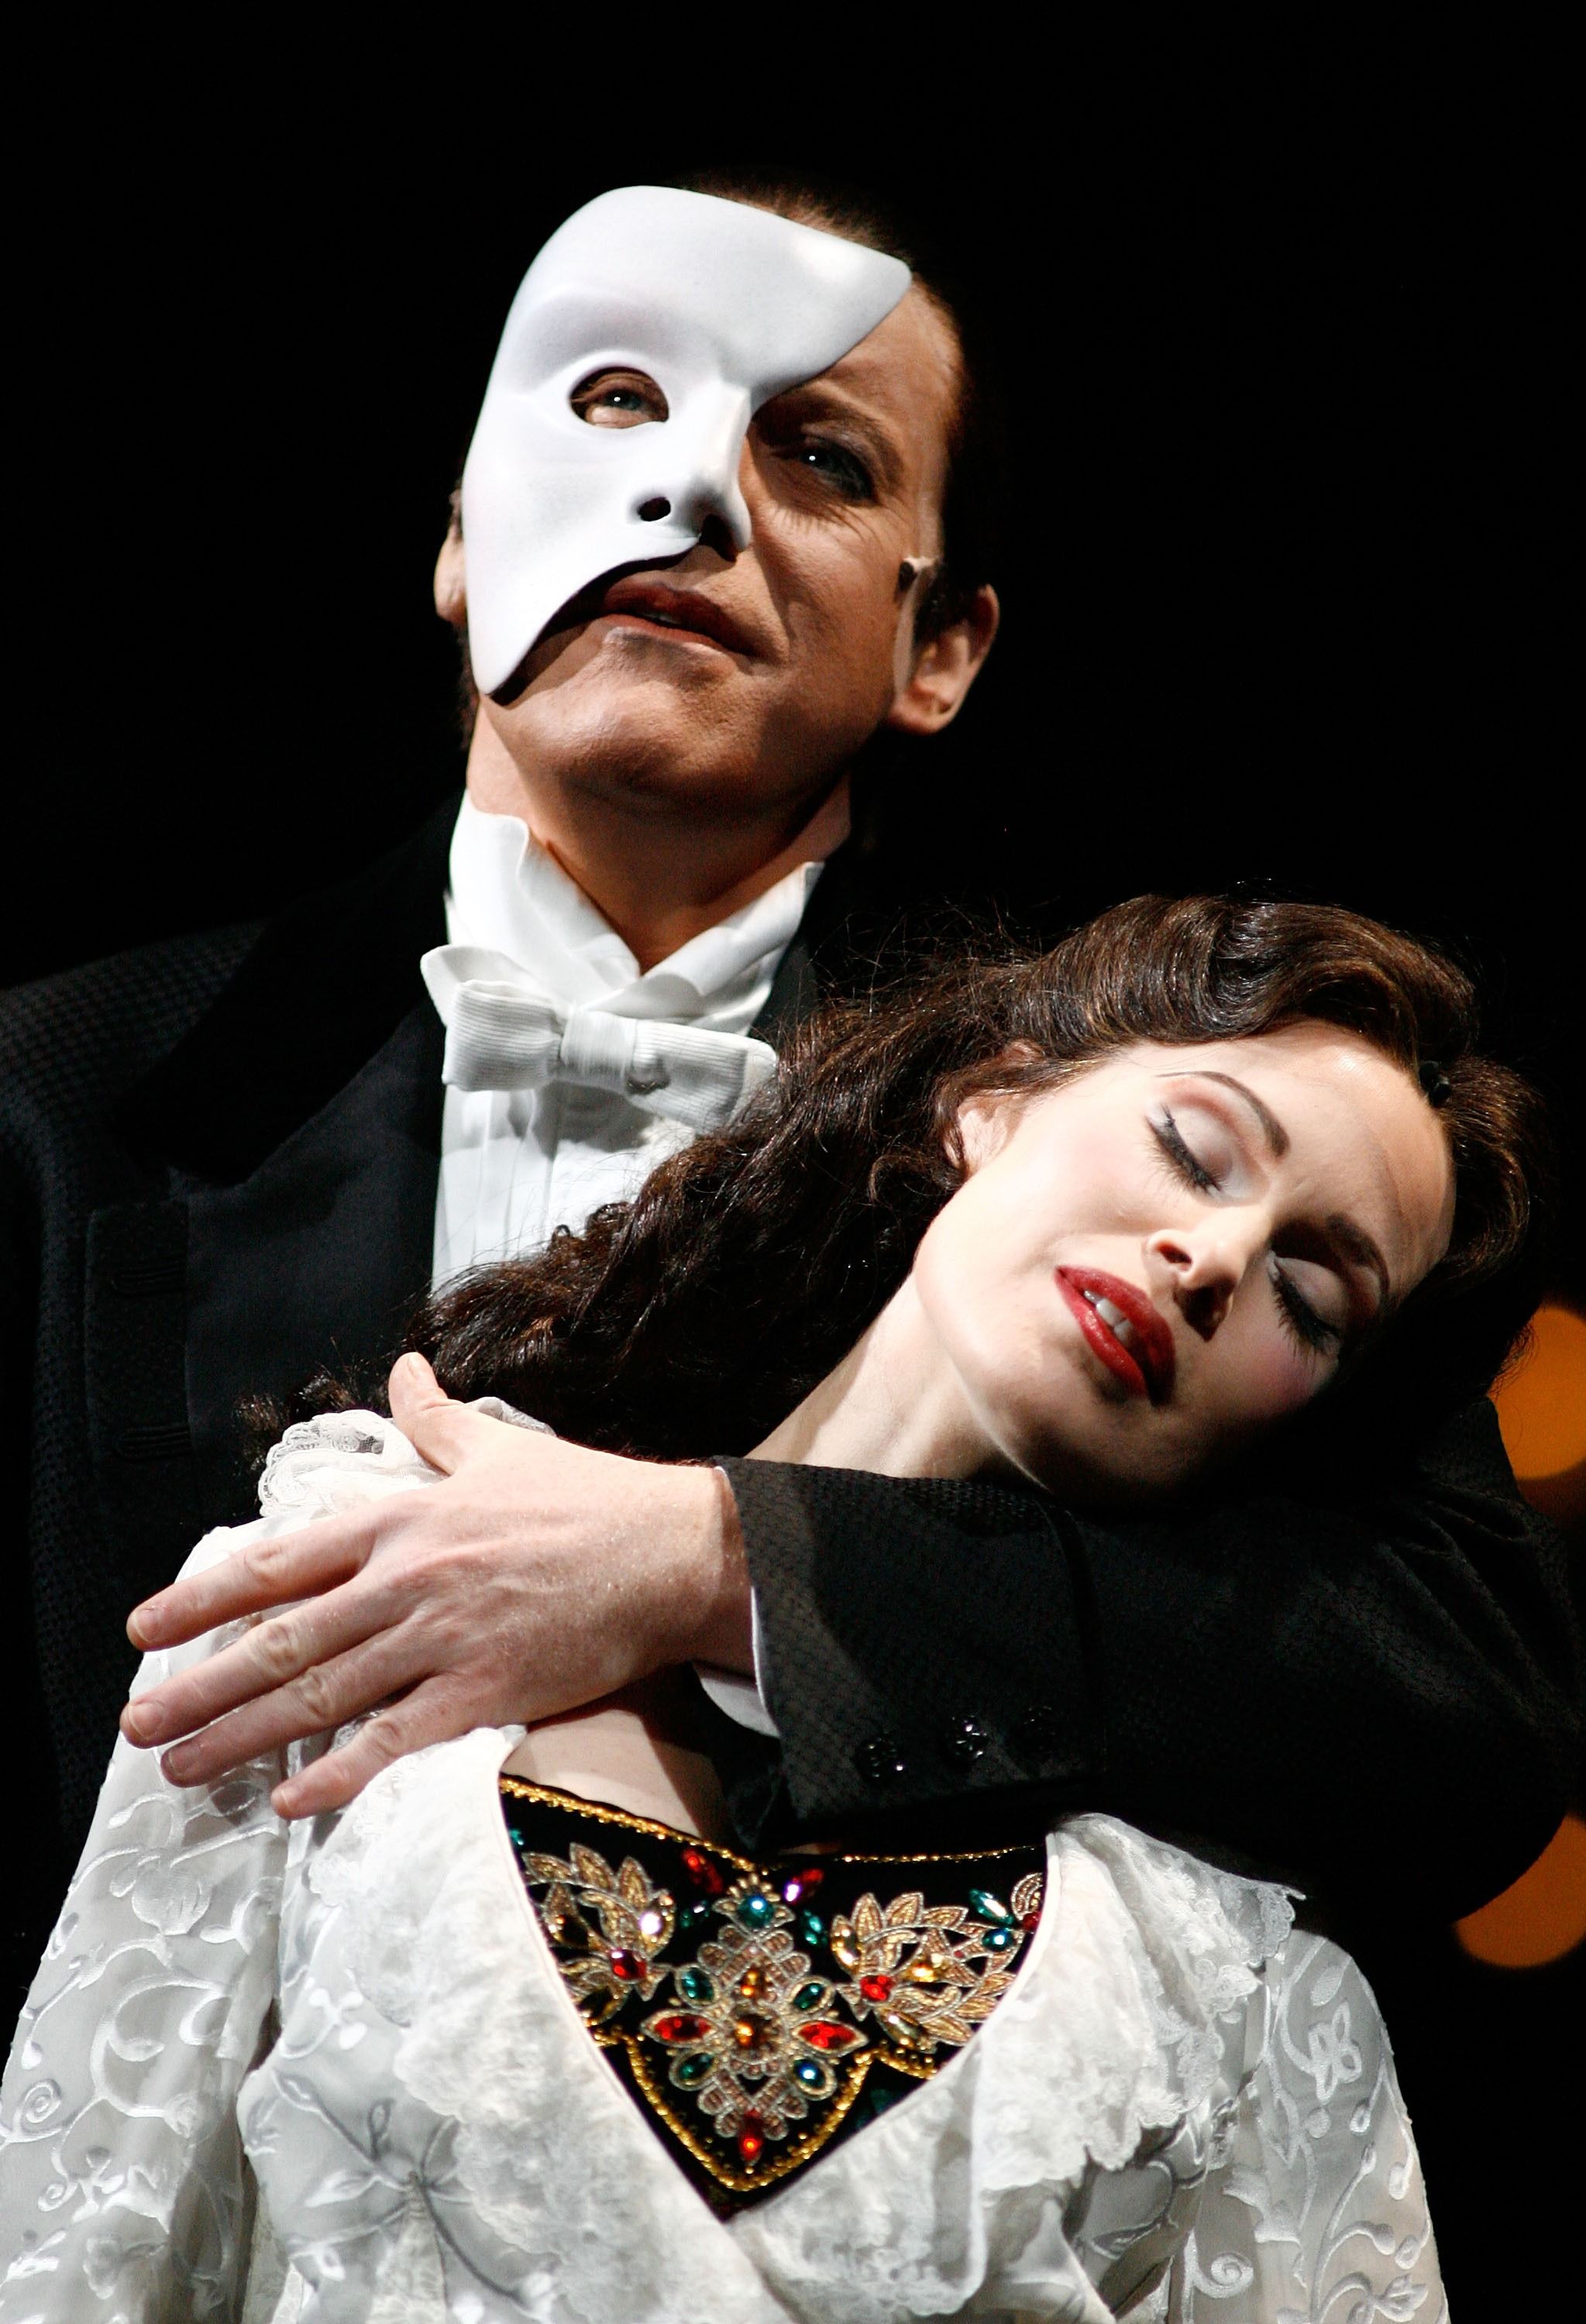 phantom of the opera mask walmart